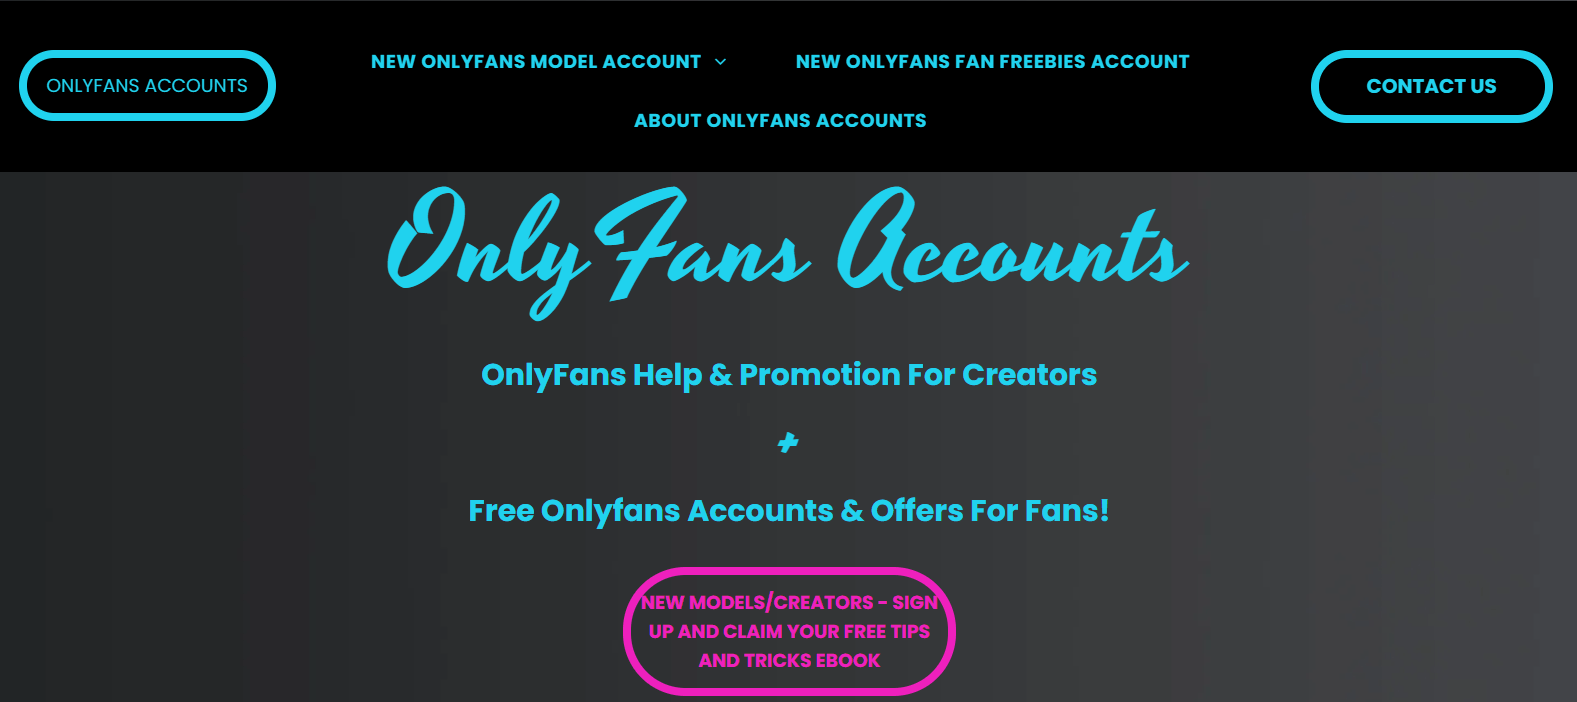 Only fan free